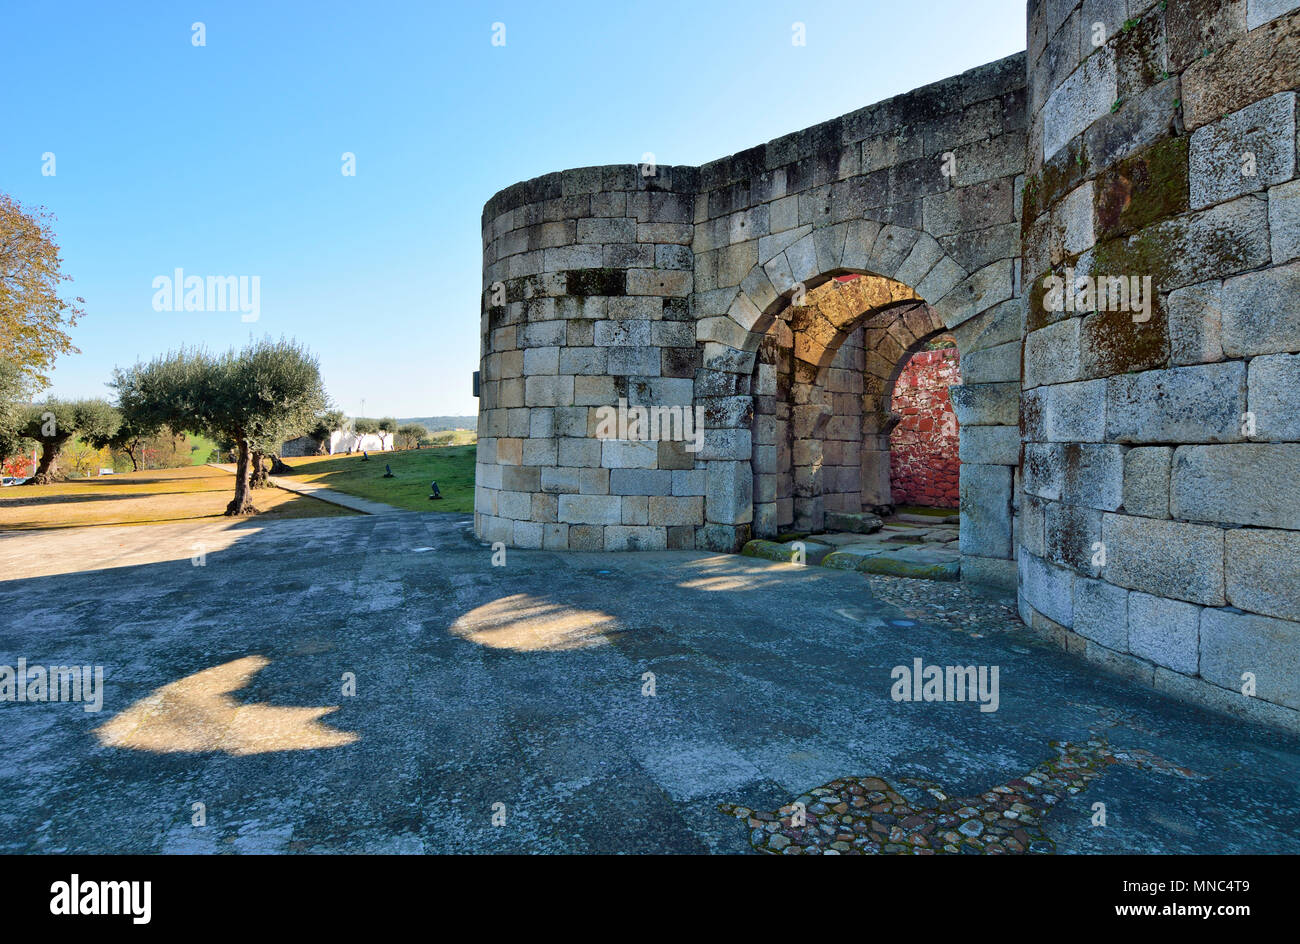 Le mura romane del villaggio storico di Idanha a Velha. Portogallo Foto Stock